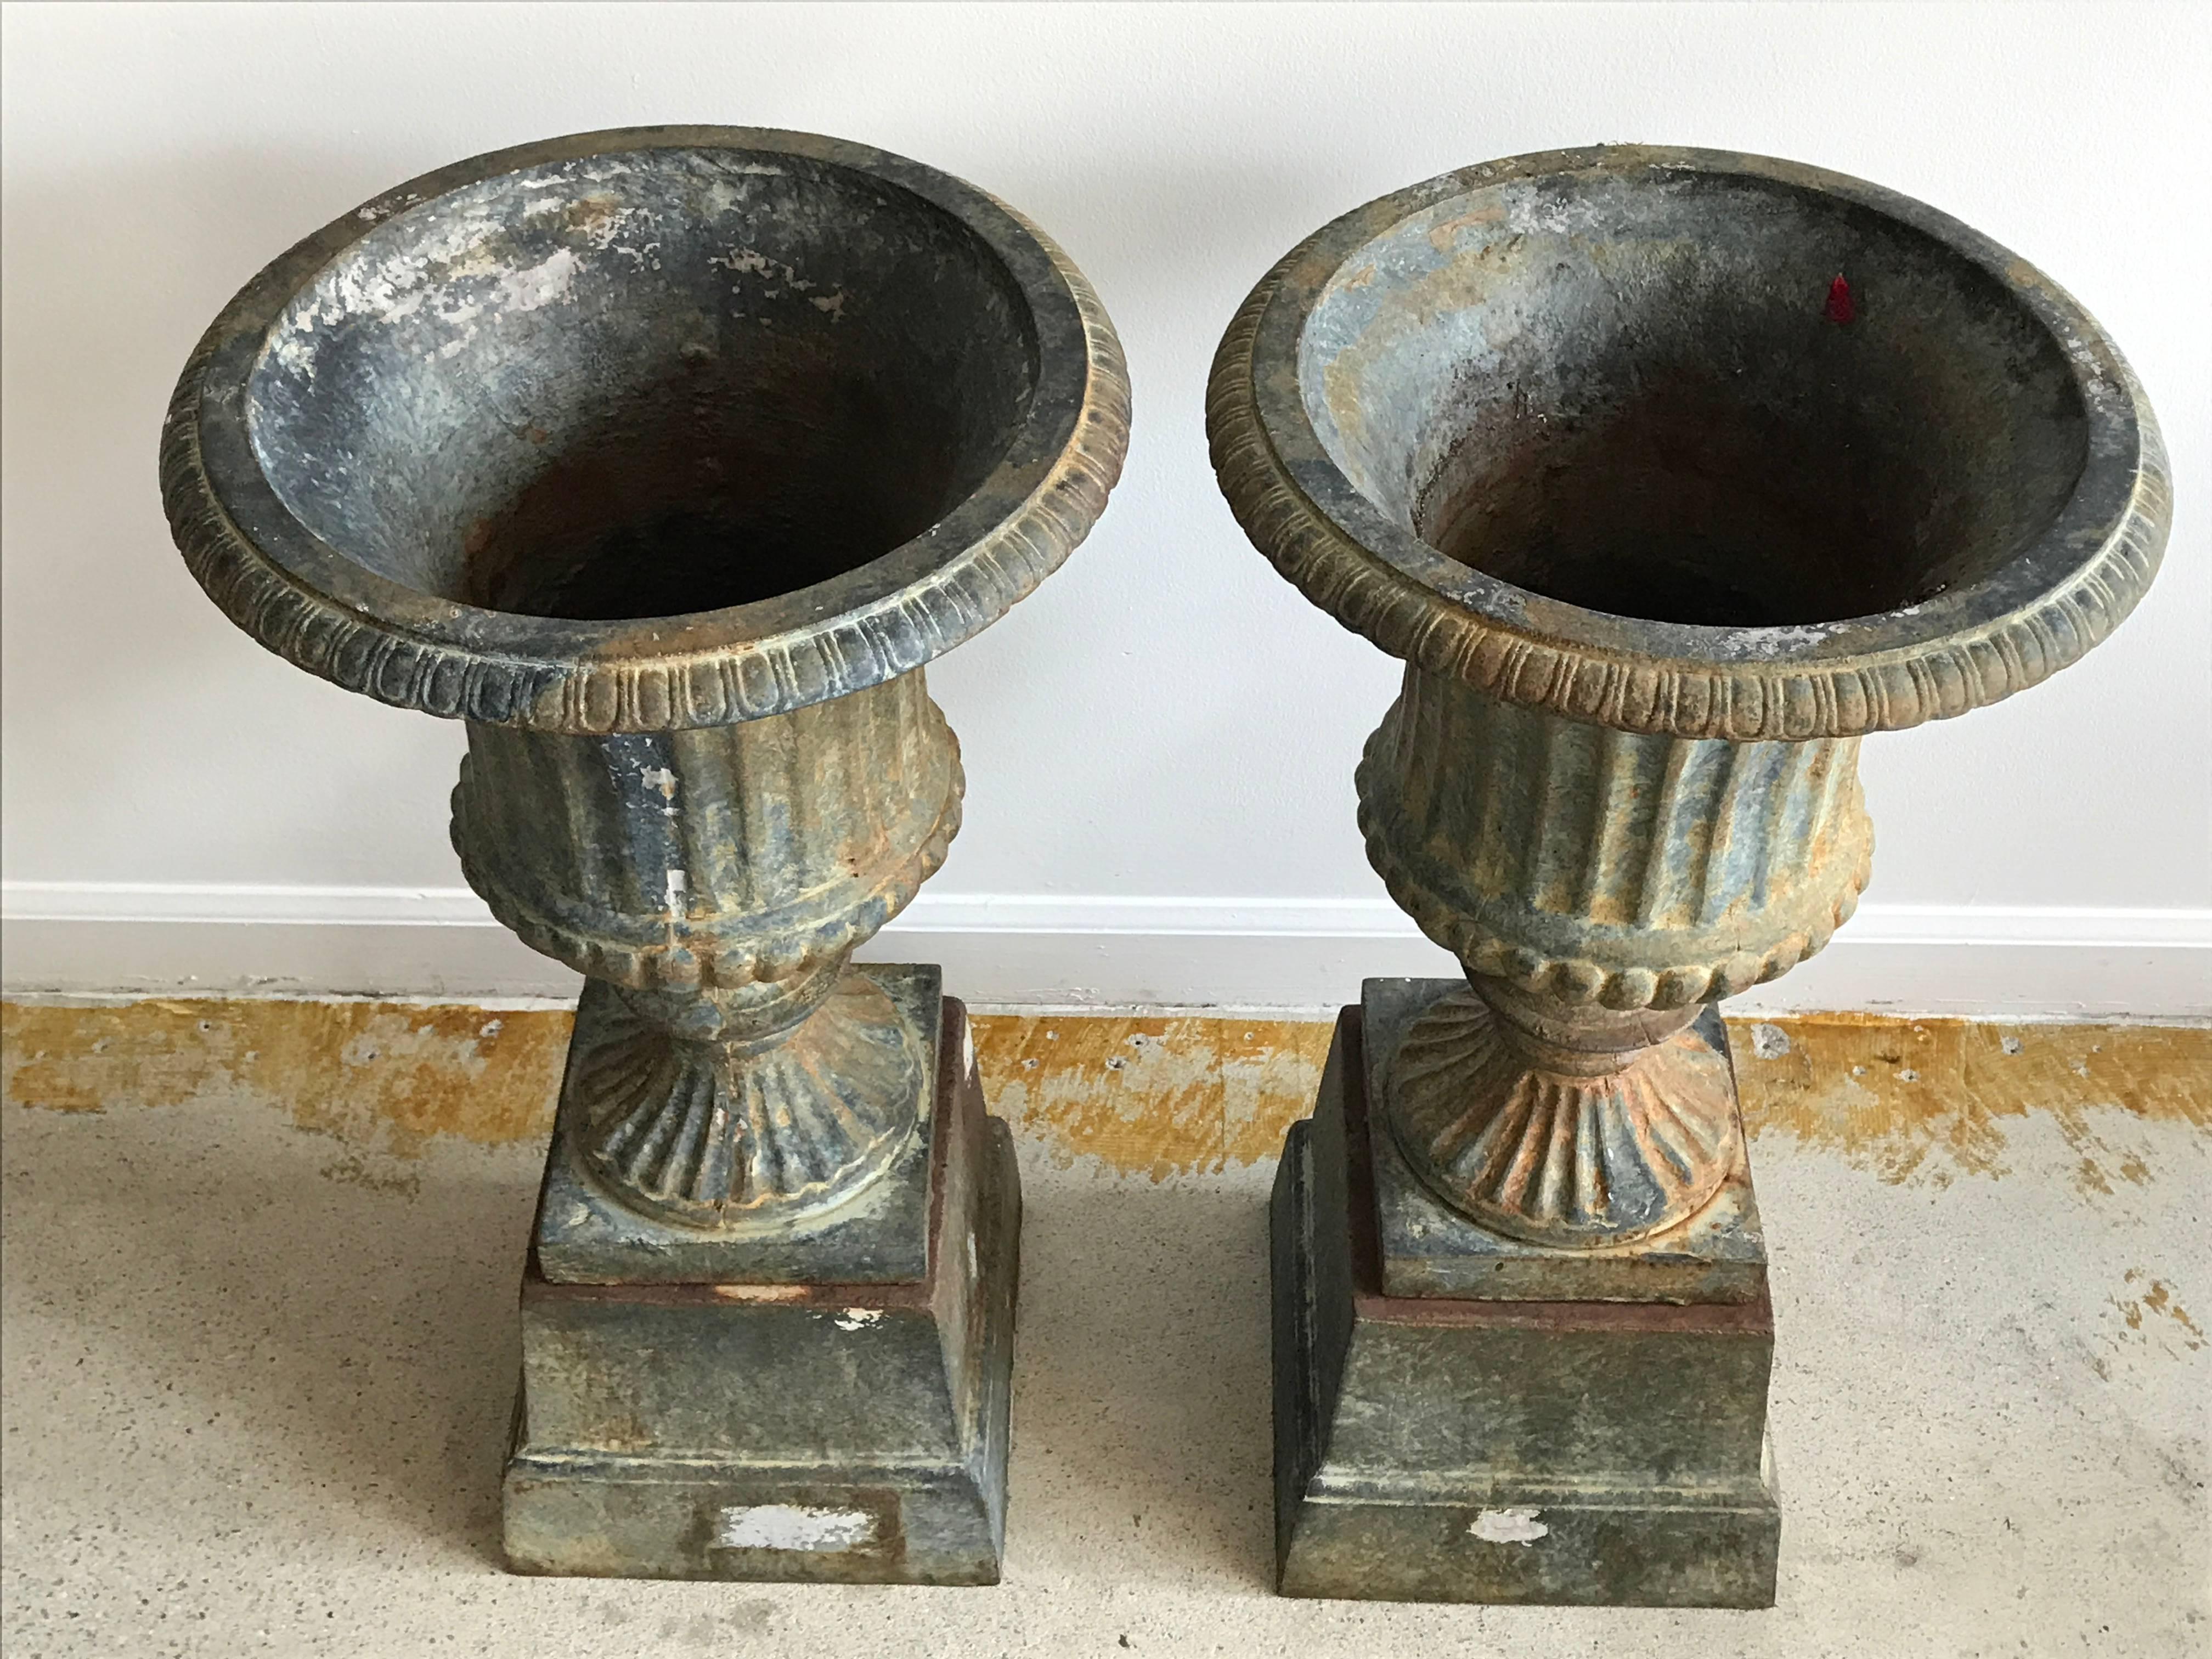 Beautiful pair of cast iron urns with original aged patina.